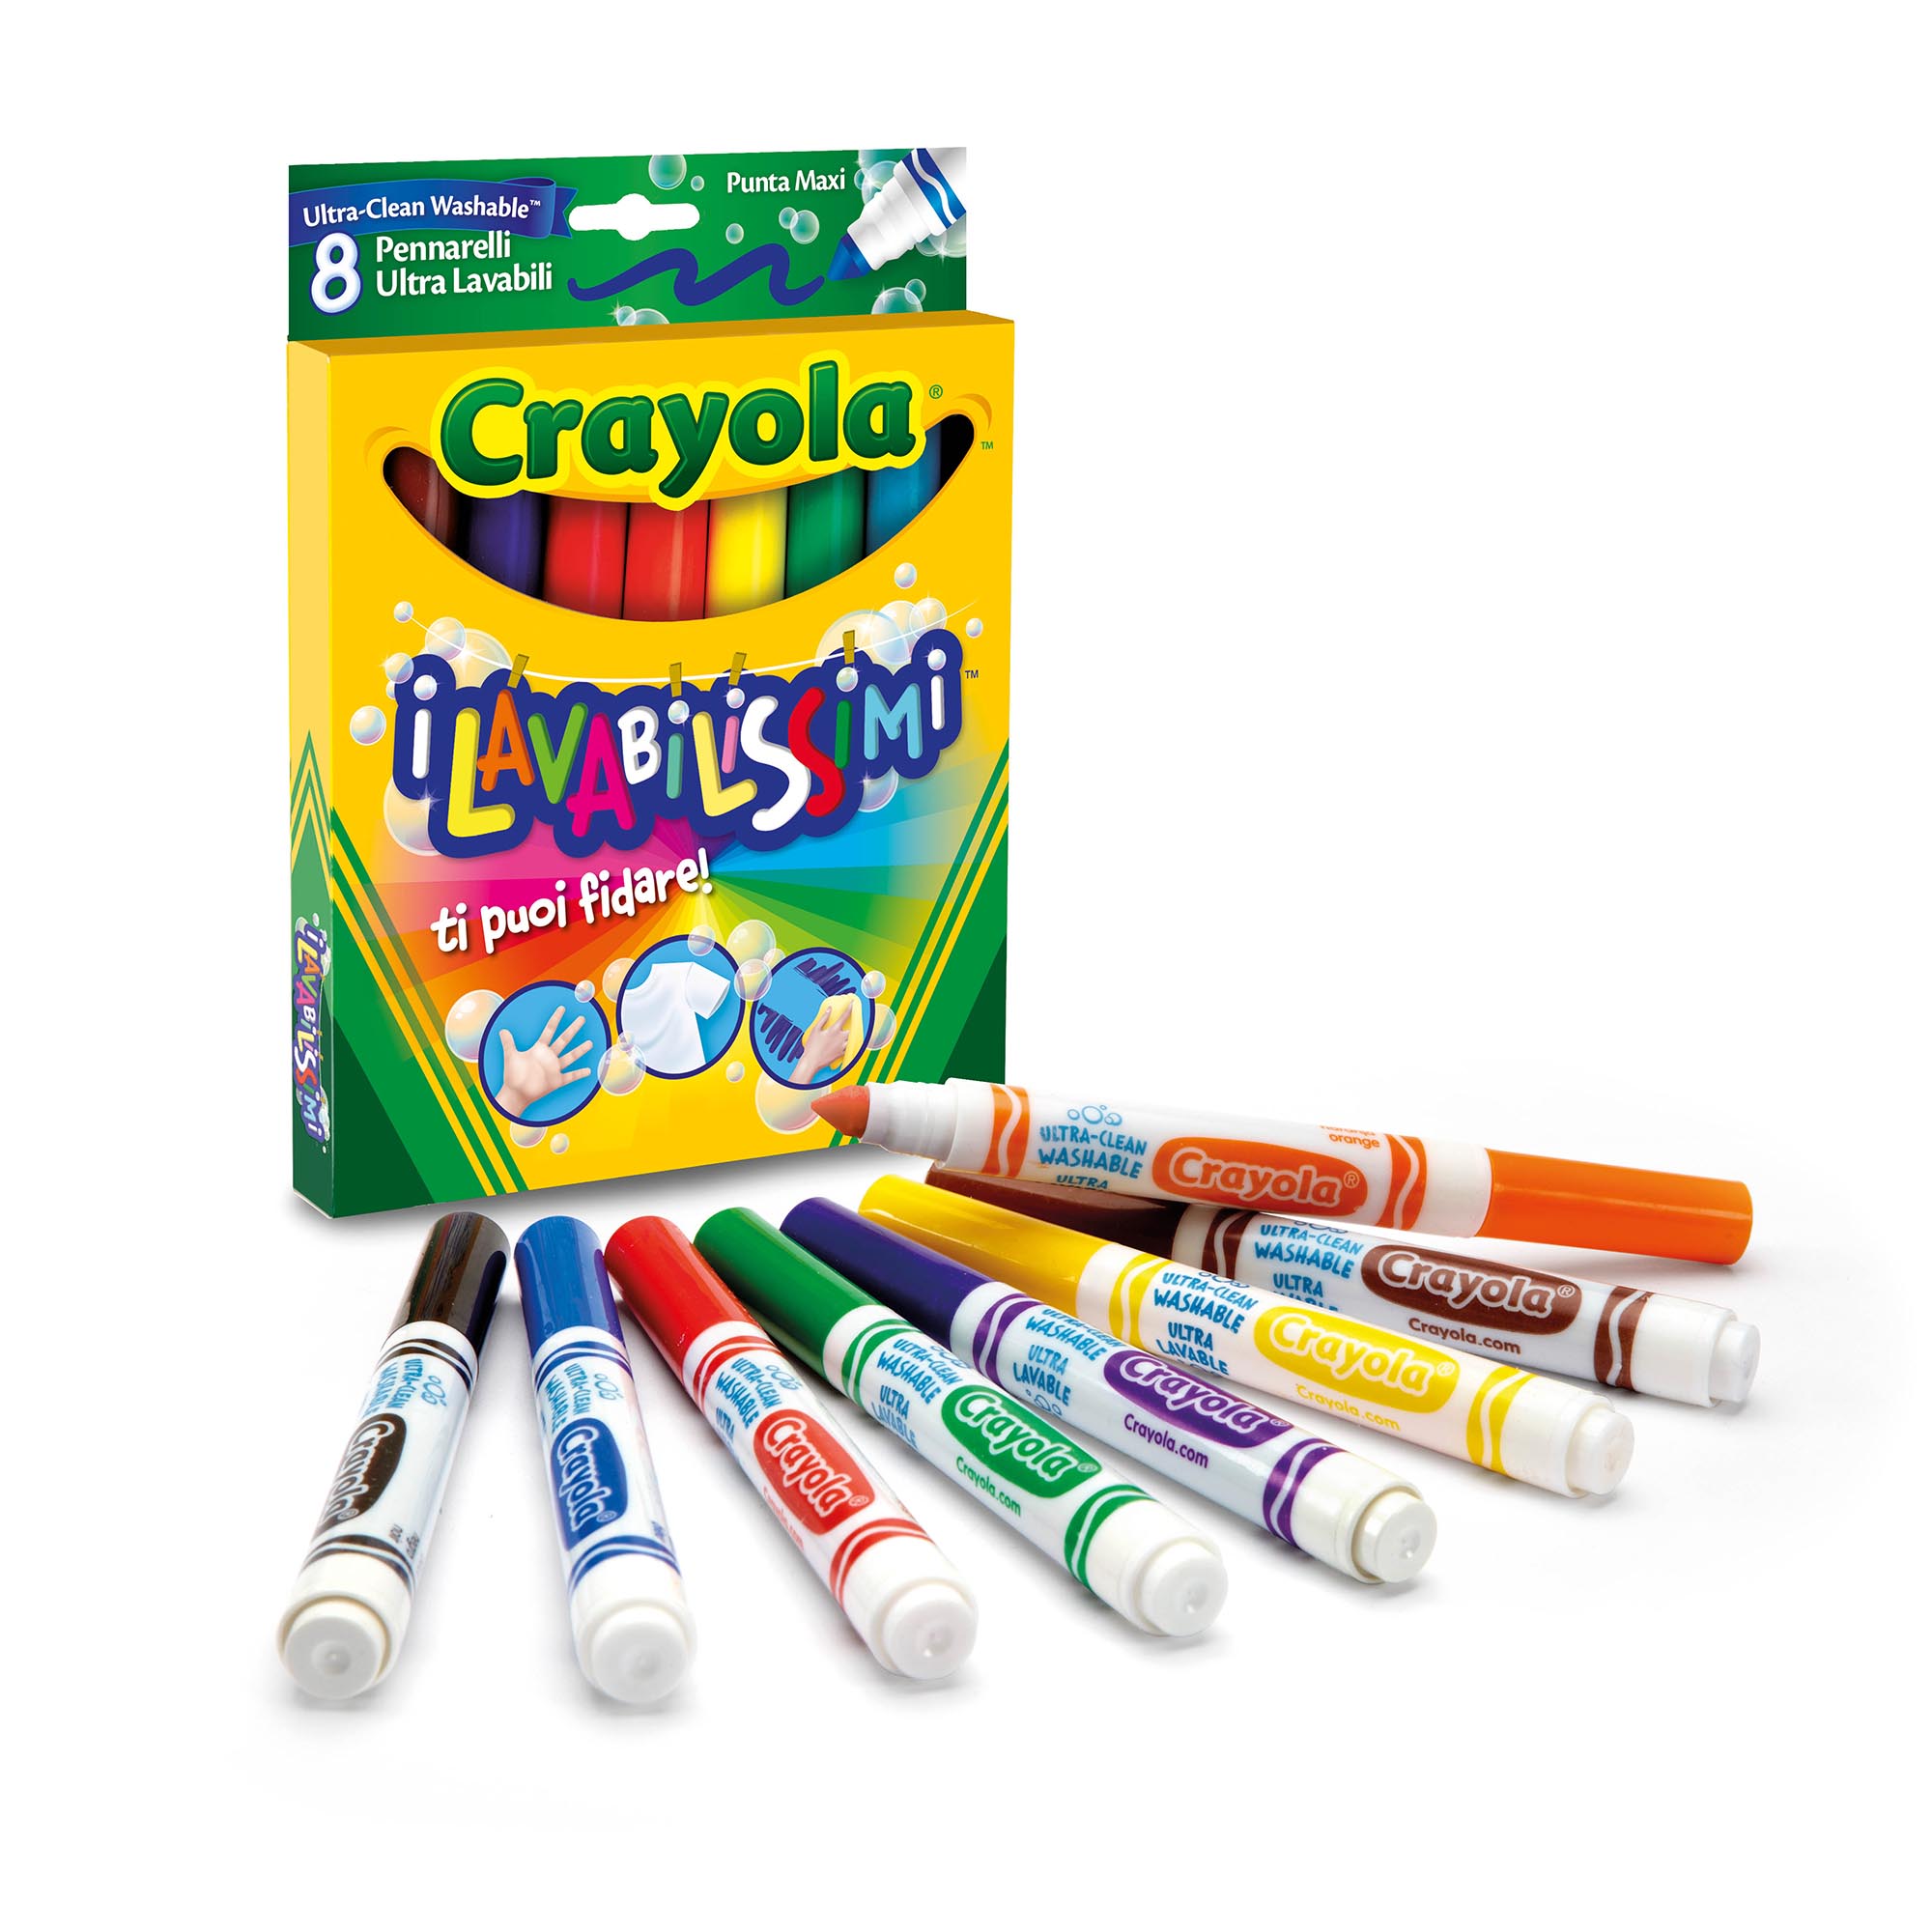 8 Pennarelli maxi punta i Lavabilissimi Crayola - Giocattoli Toys Center